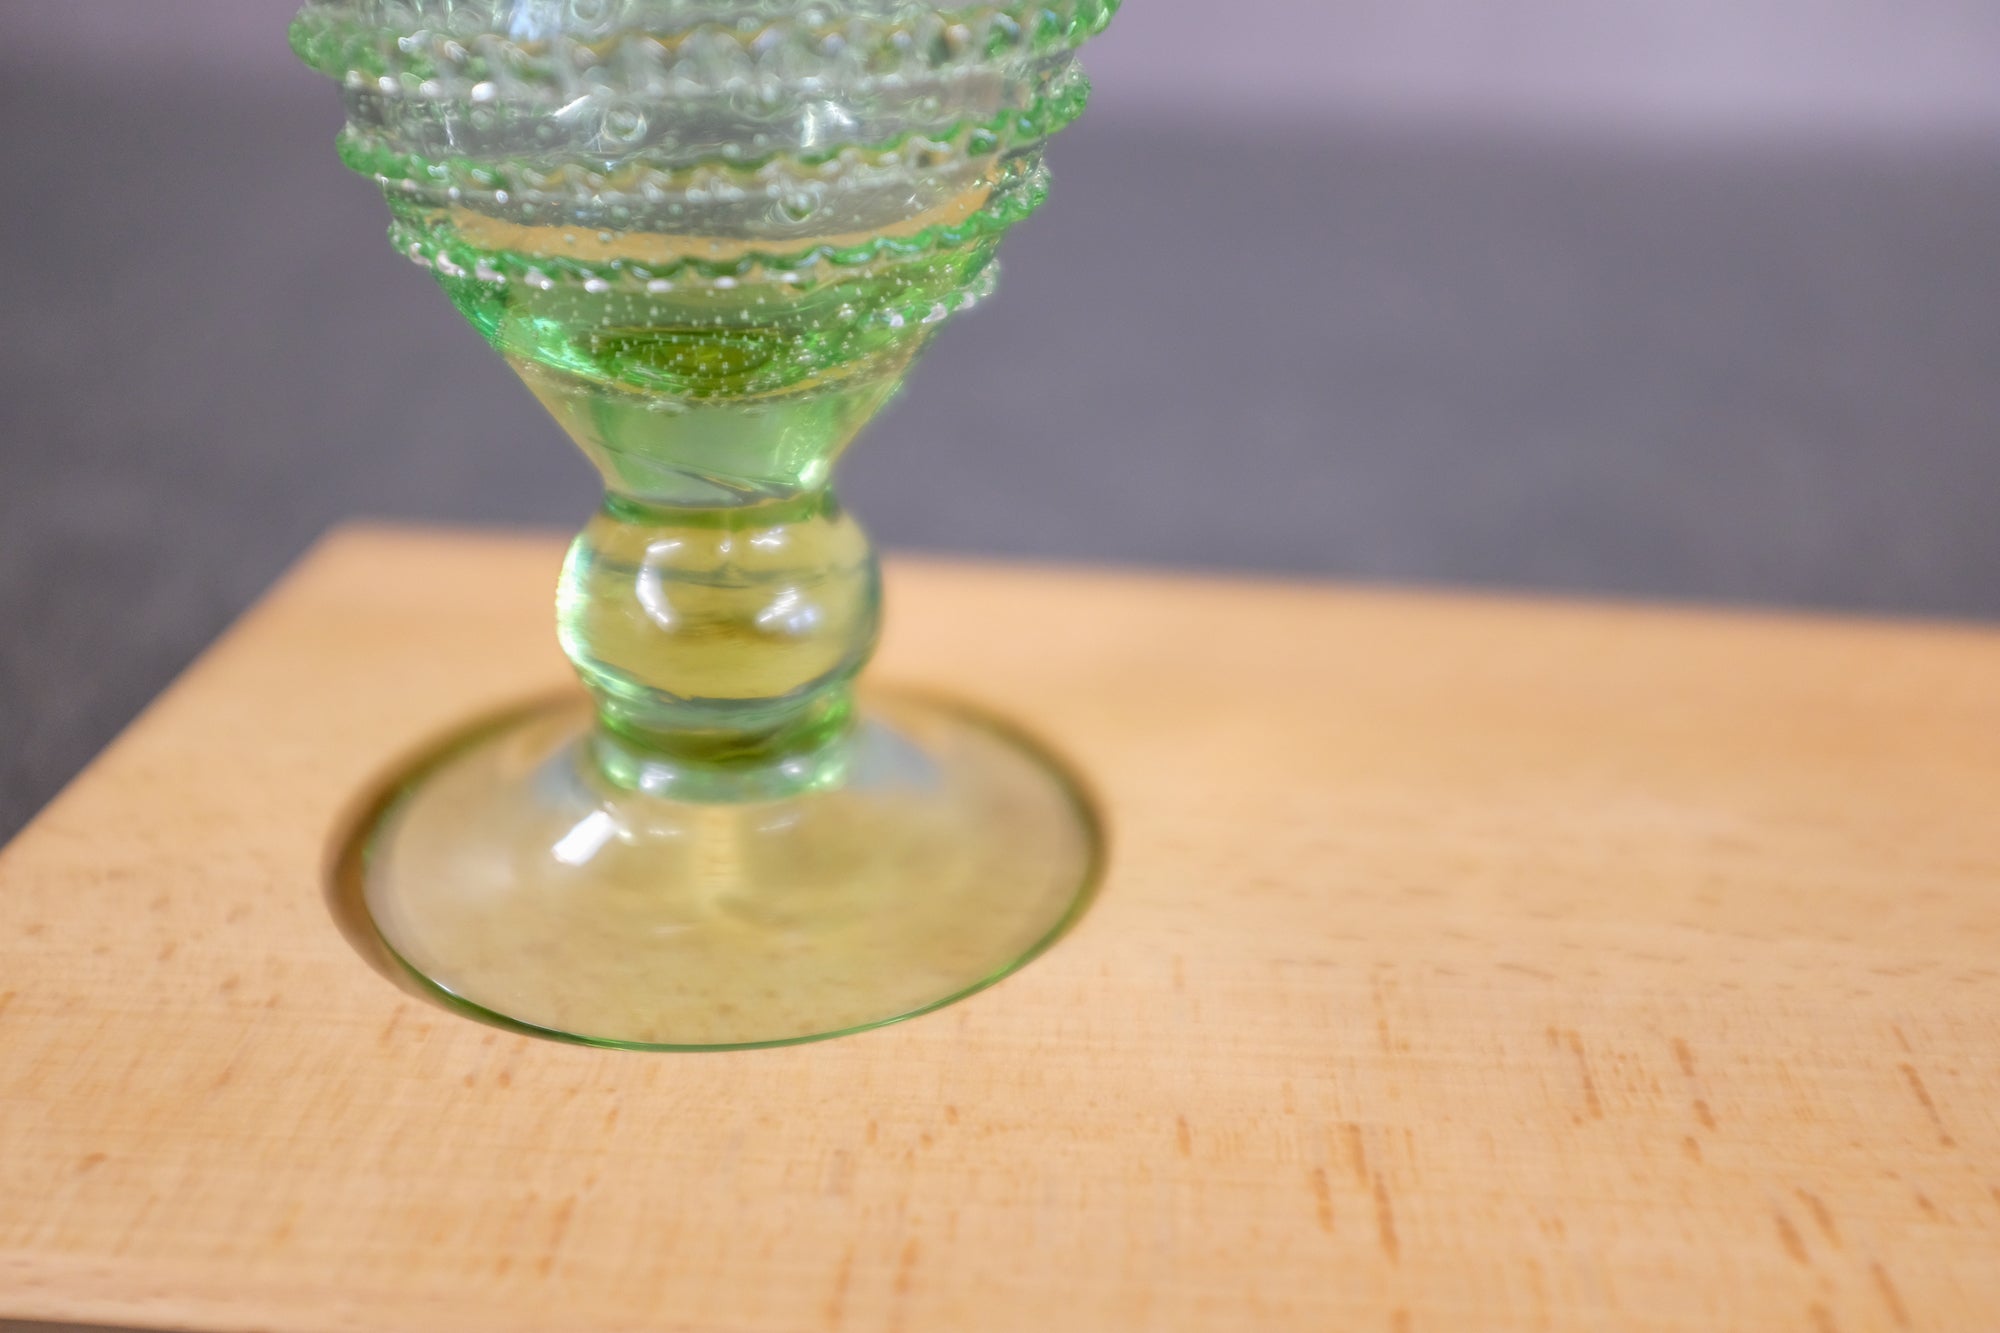 Detailansicht des Stieles eines mittelalterlichen Weinglases.